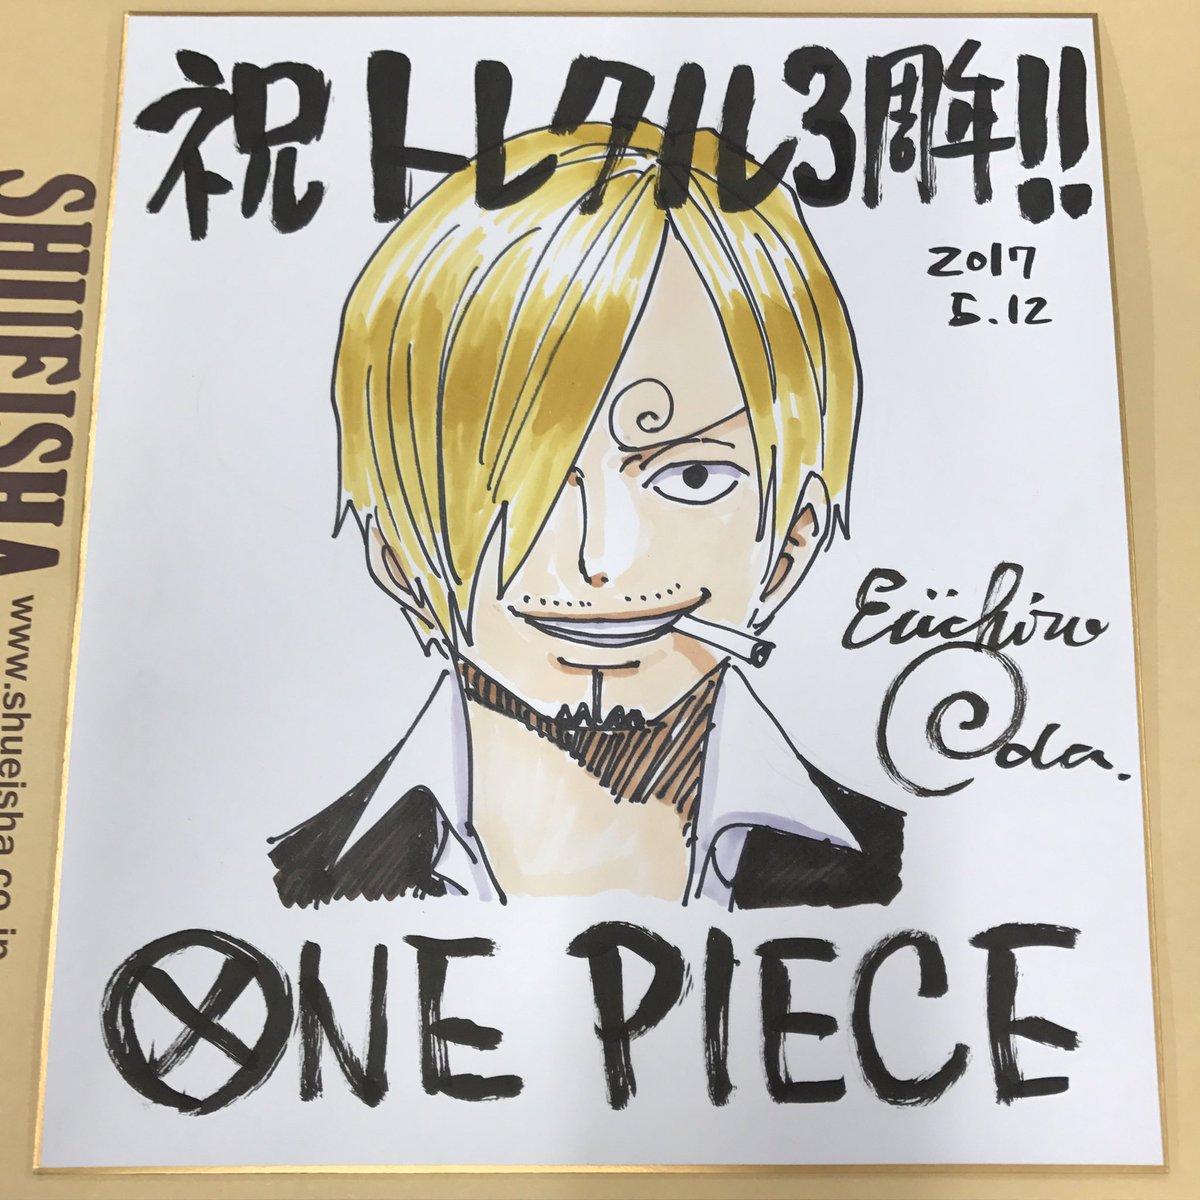 One Piece スタッフ 公式 Official 皆さん へそー ということで 本日はみんな大好きトレクルの３周年 でございますッ ということで 尾田さんからお祝い色紙が到着 サン周年にちなんでサンジさんです笑 そして どうやら尾田さんはギア4ルフィを